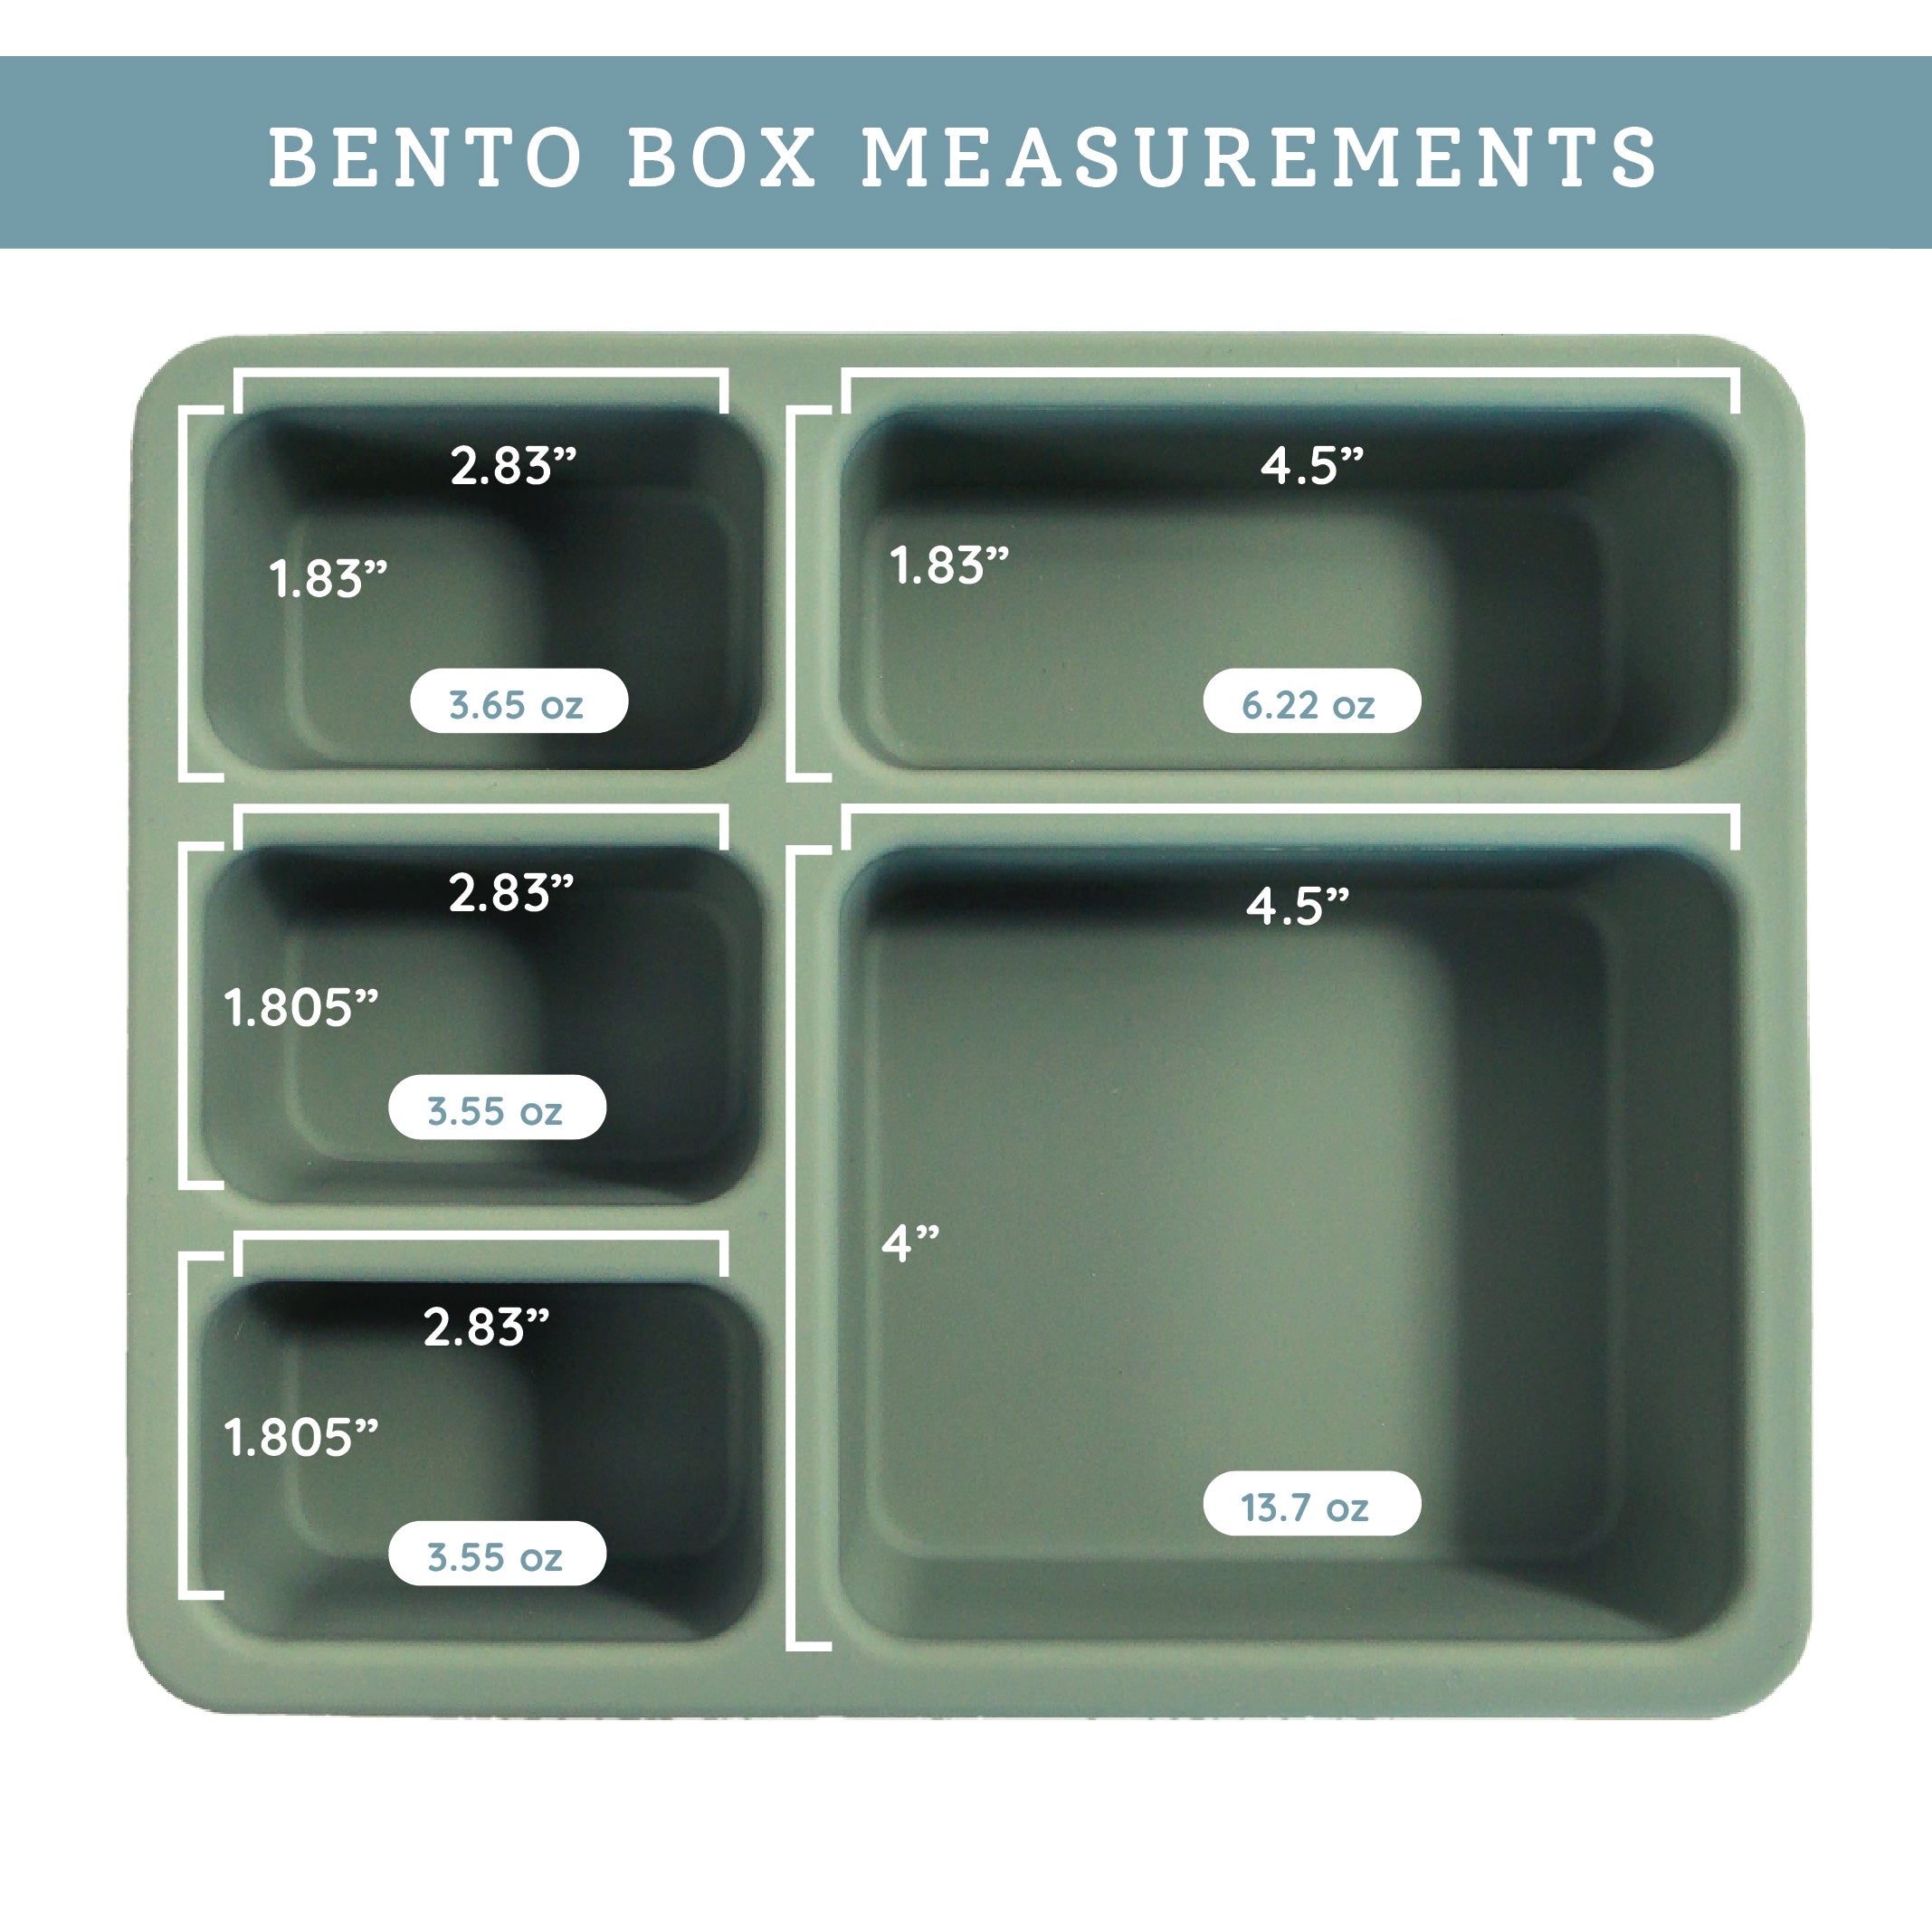 Bento Boxes – Austin Baby Collection